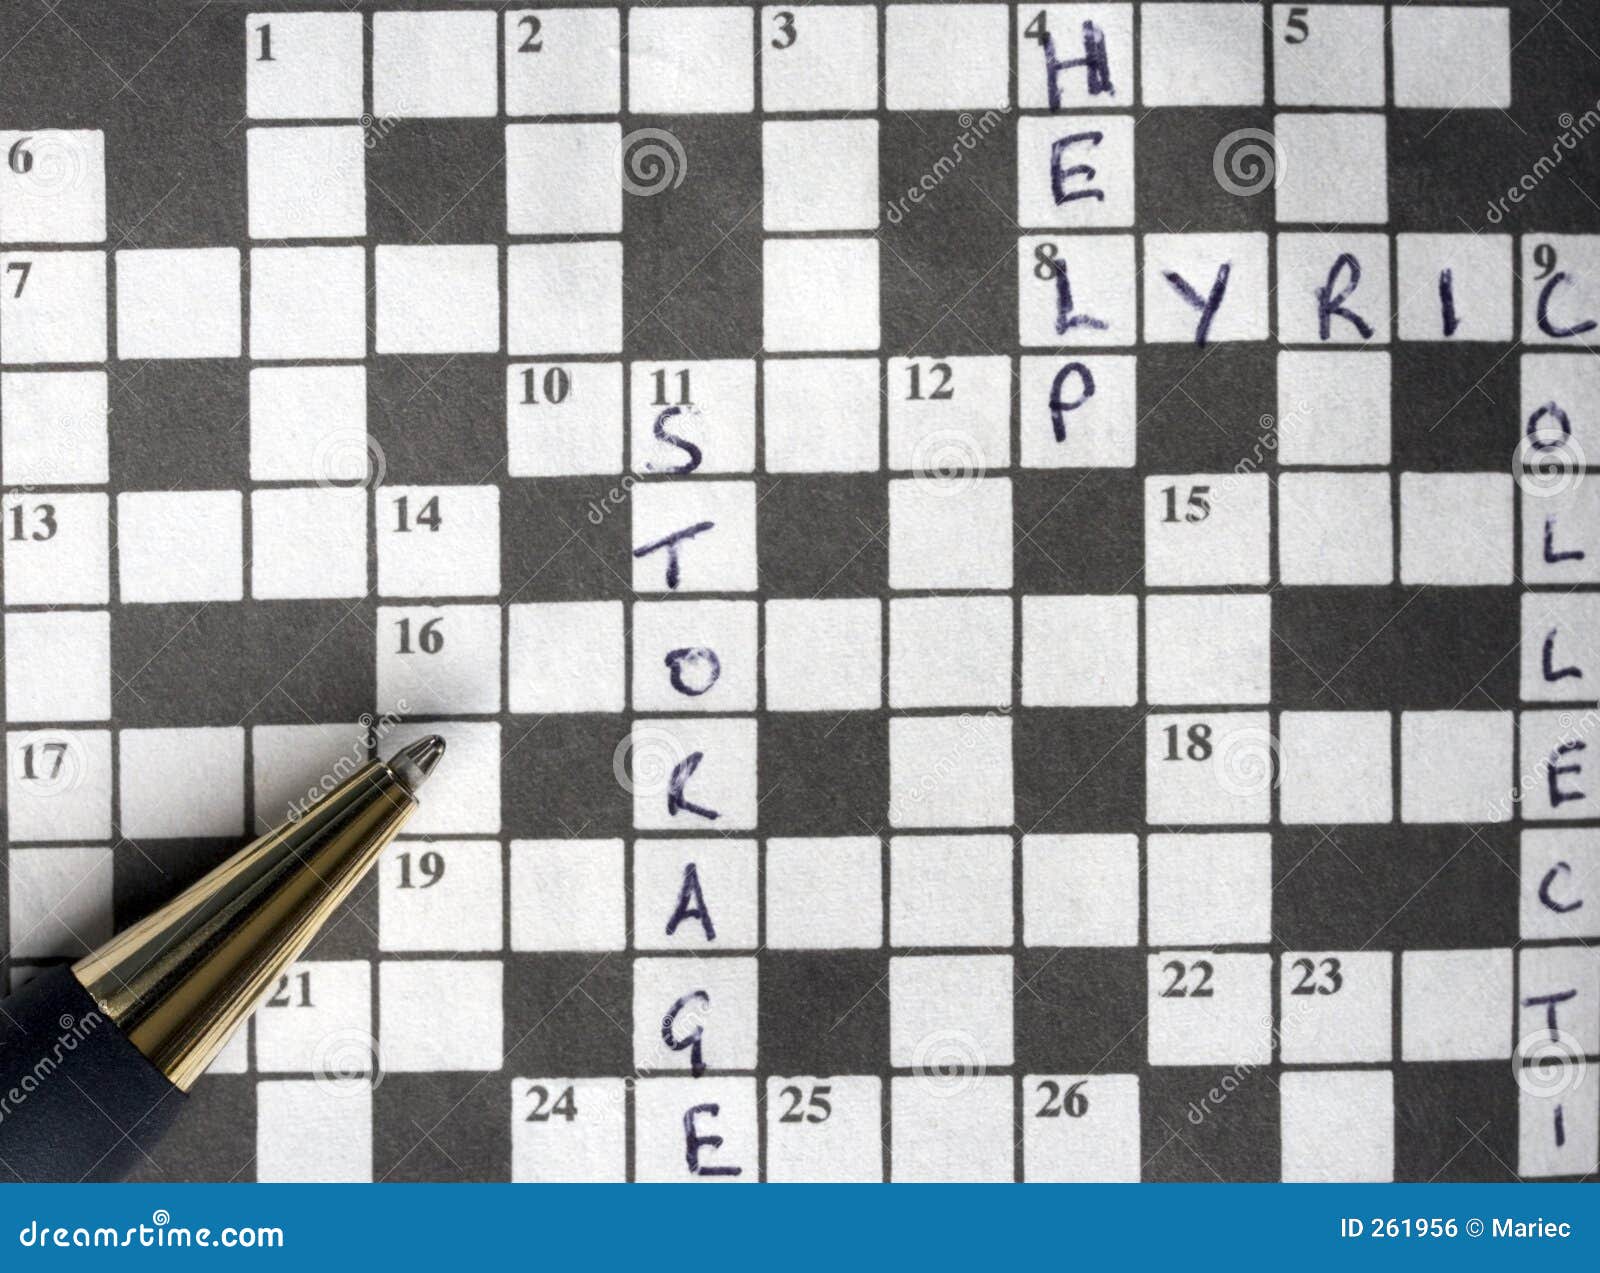 Chess Crossword Puzzle